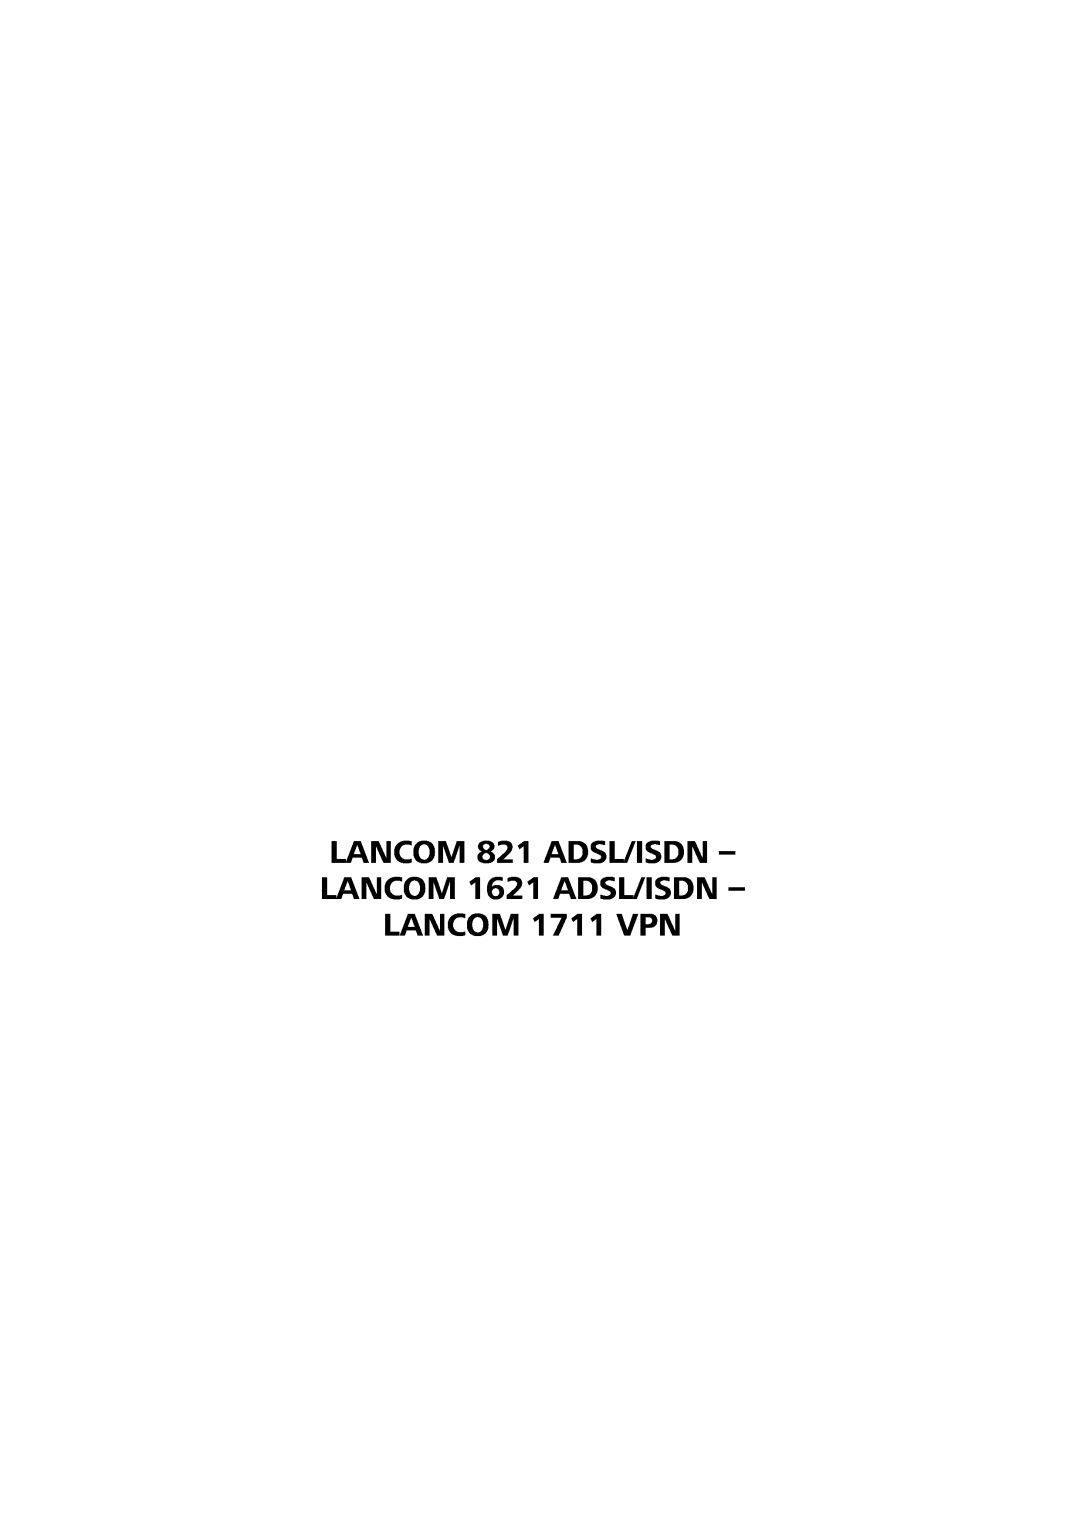 Lancom Systems manual LANCOM 821 ADSL/ISDN - LANCOM 1621 ADSL/ISDN - LANCOM 1711 VPN 